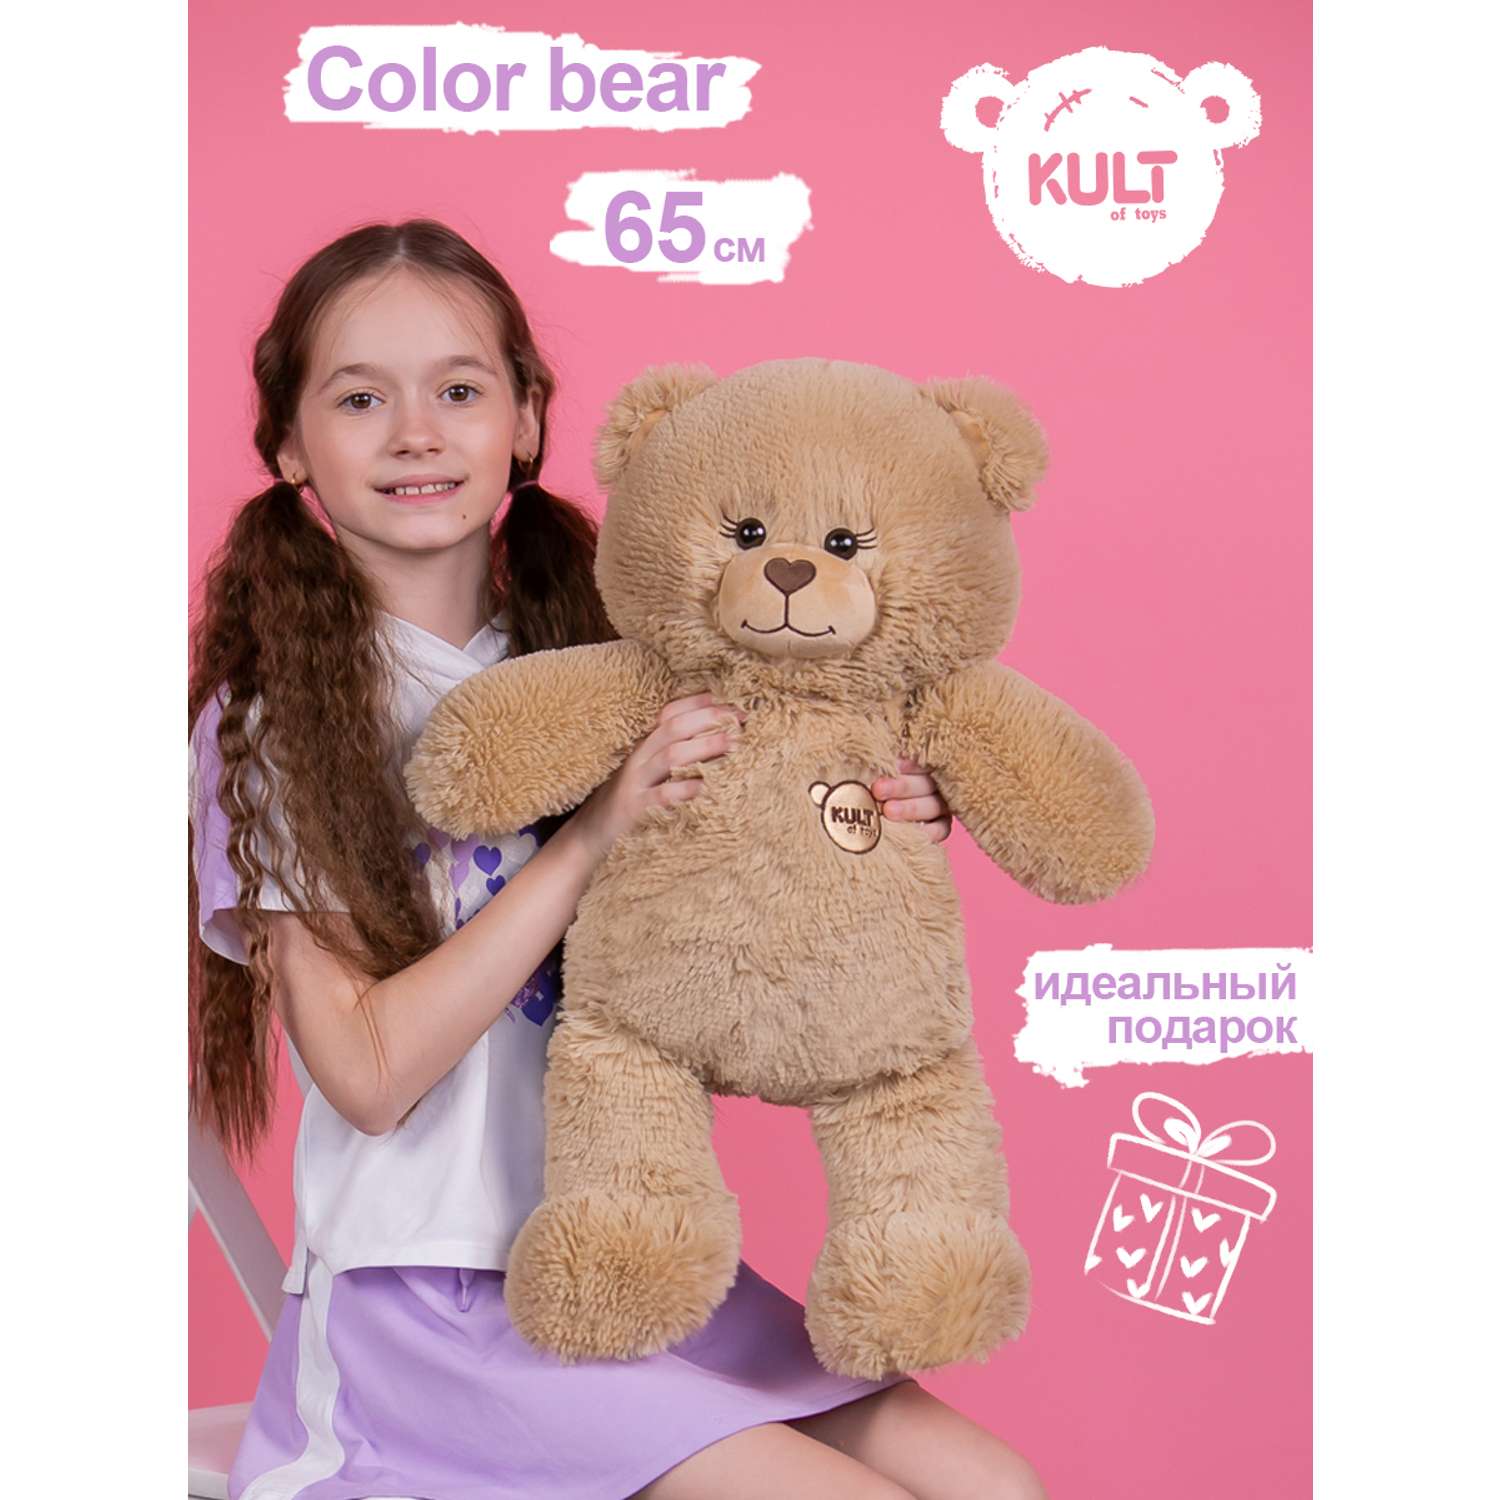 Мягкая игрушка KULT of toys Плюшевый медведь Color Bear 65 cм цвет кофейный - фото 2